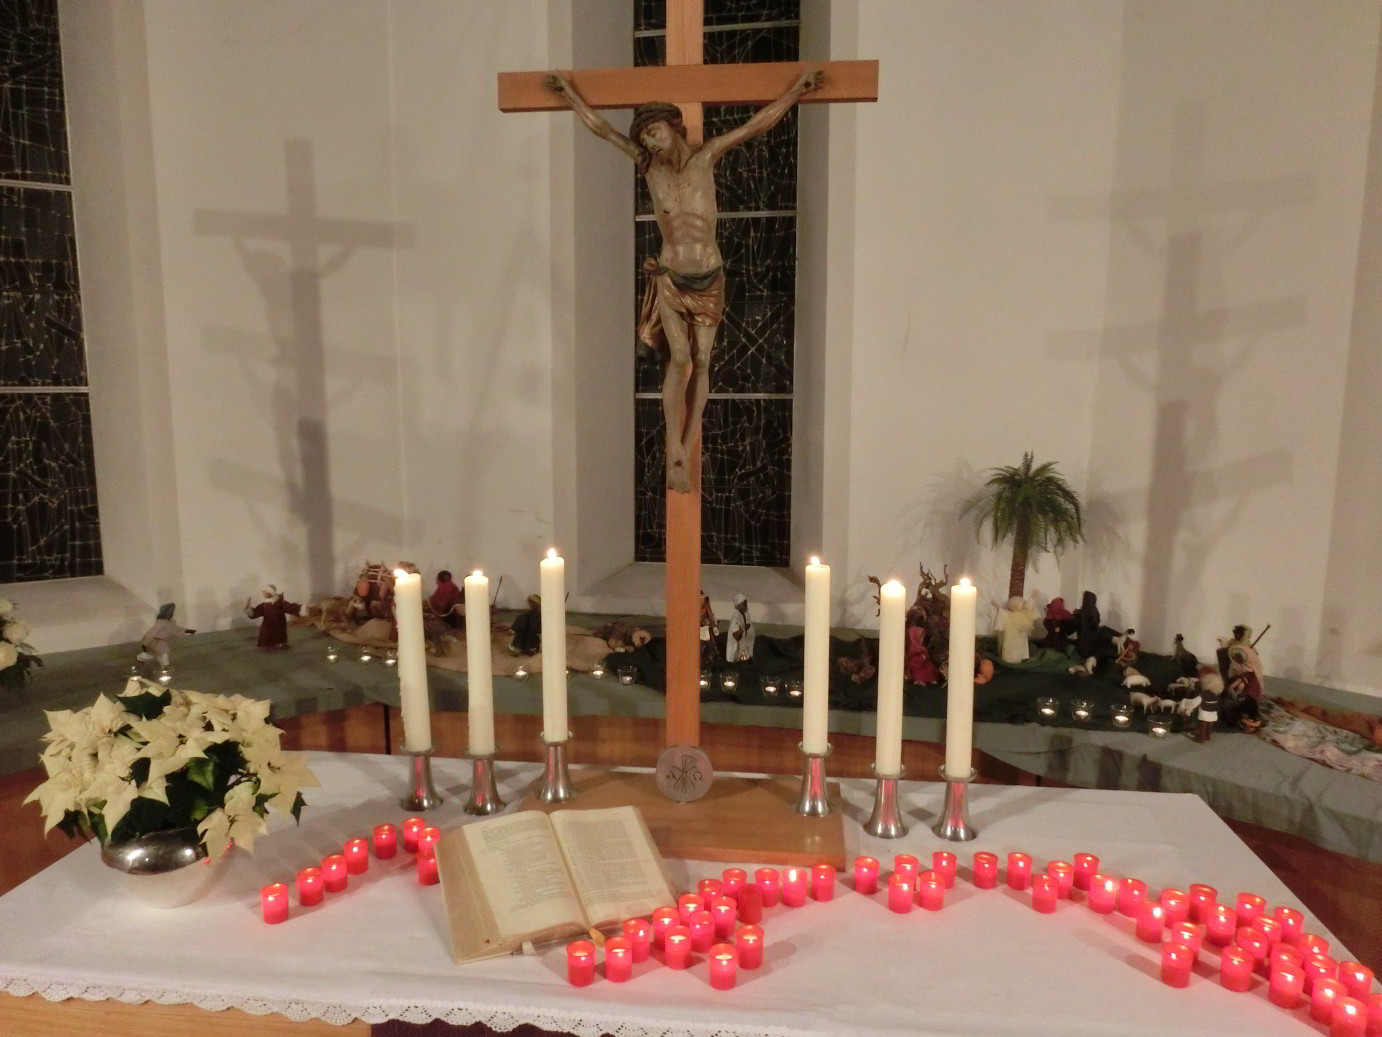 Kerzen am Altar